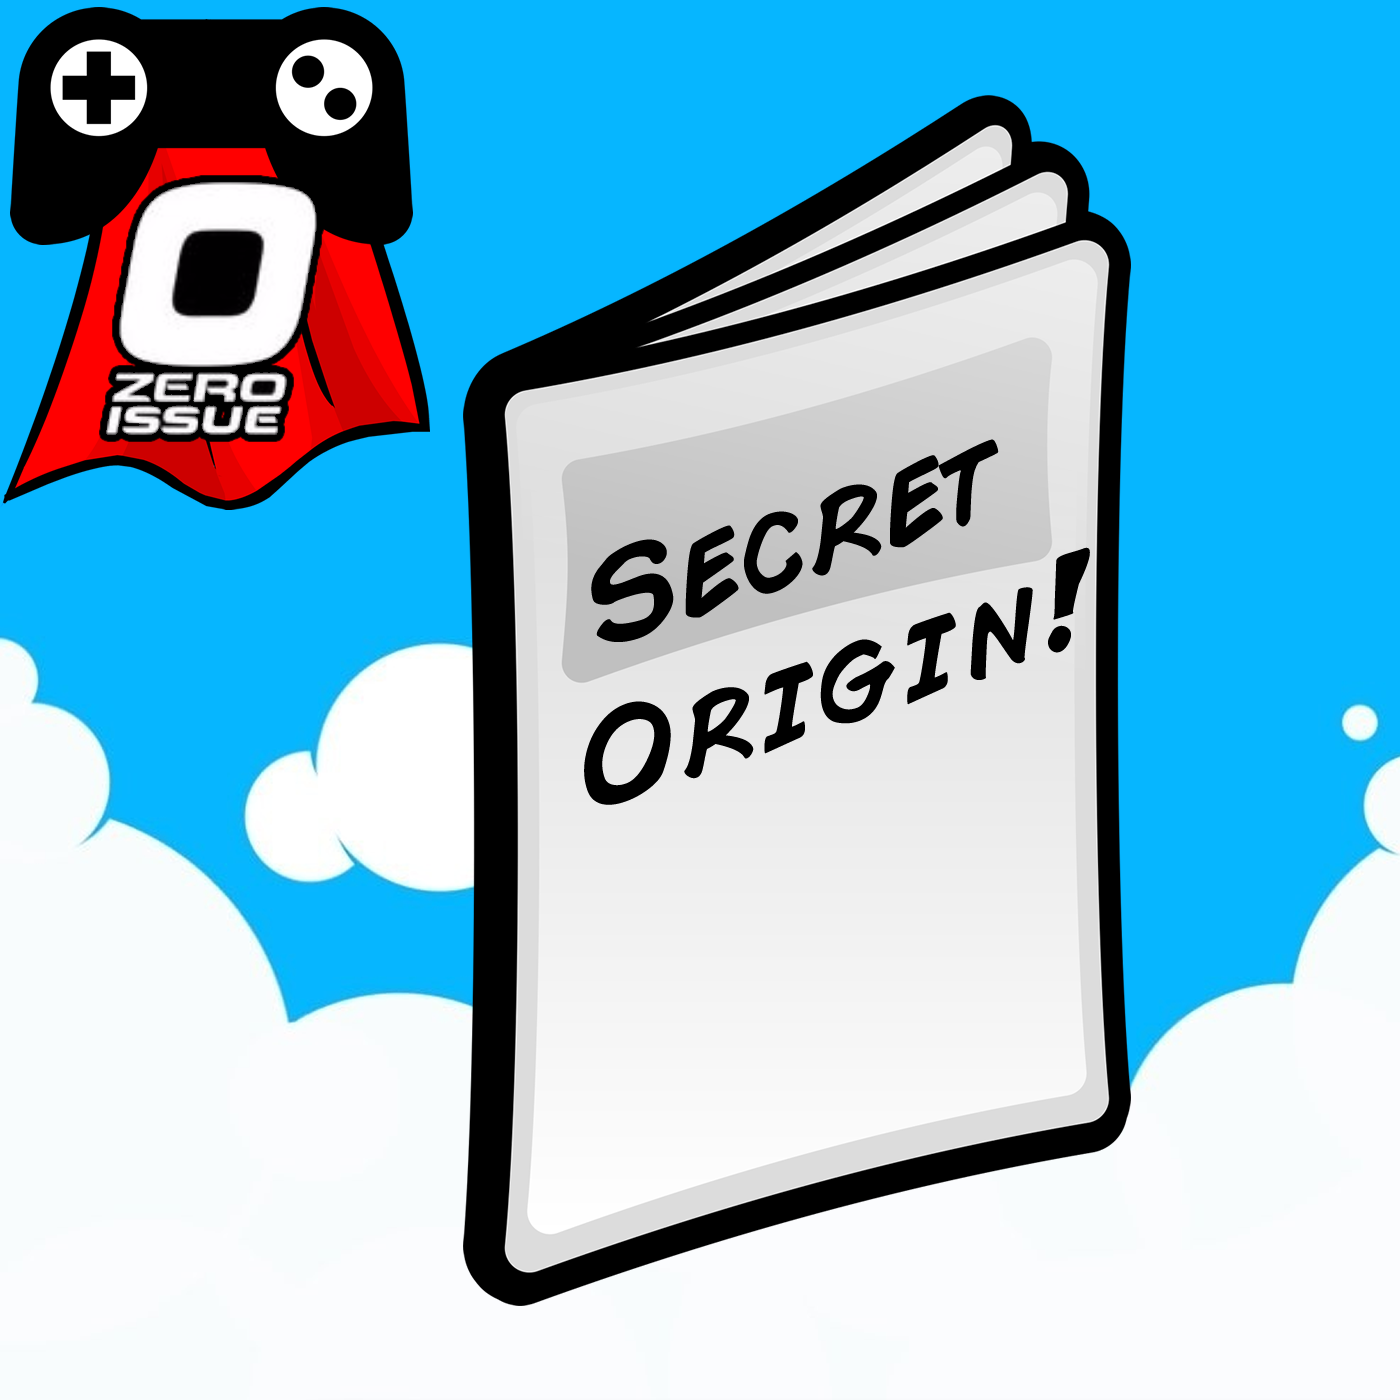 Issue #0: Secret Origin